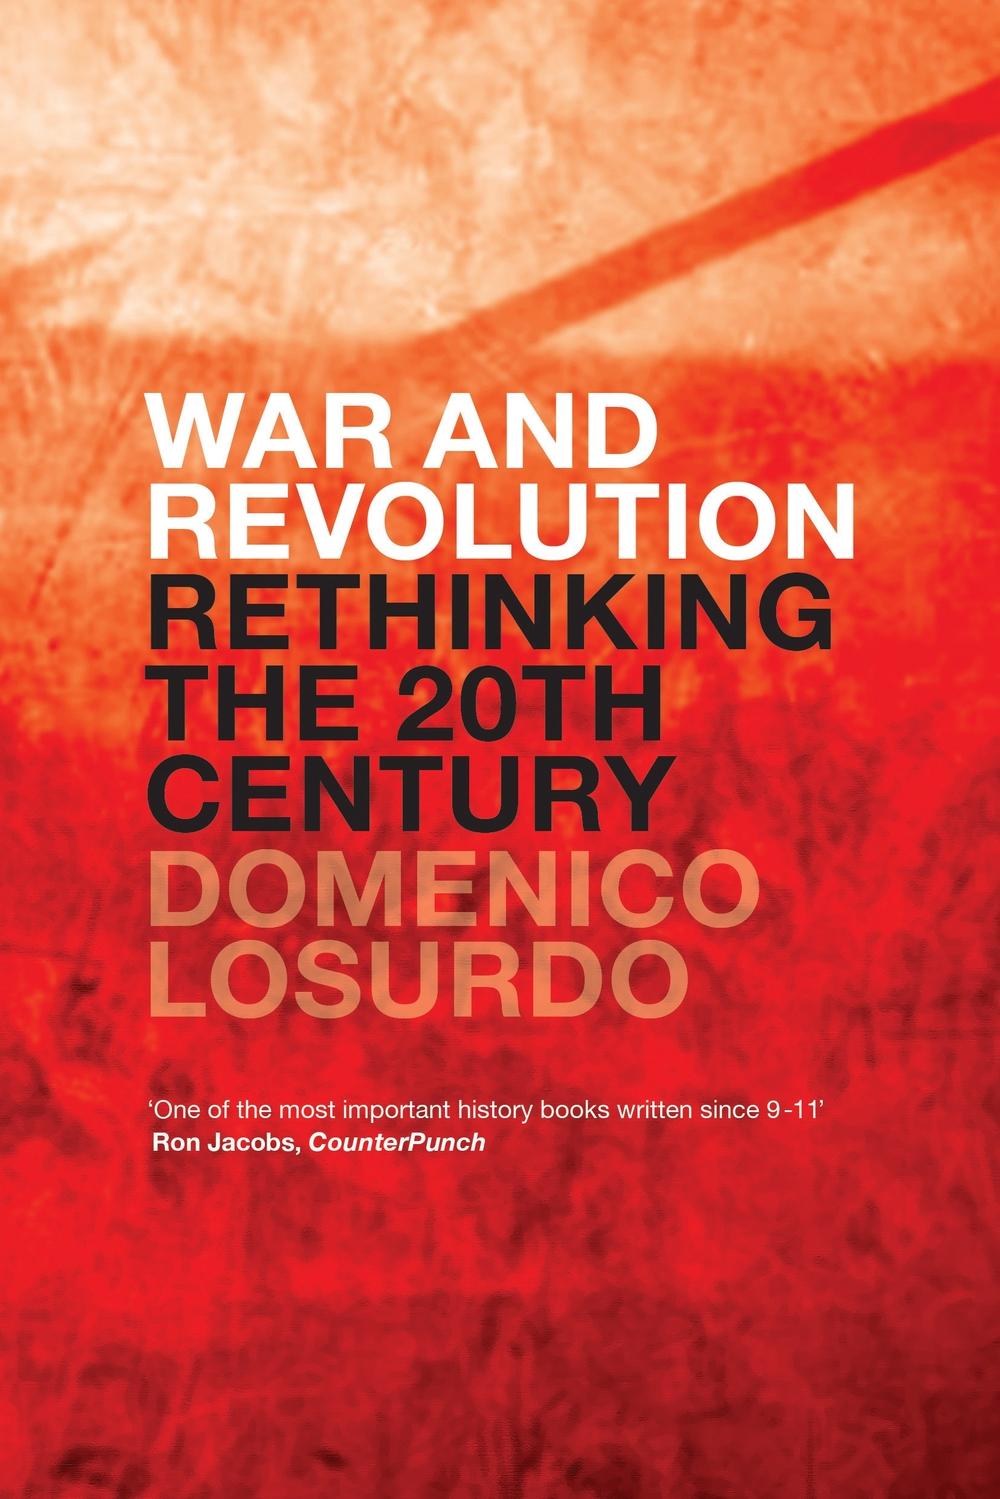 War and Revolution - Domenico Losurdo